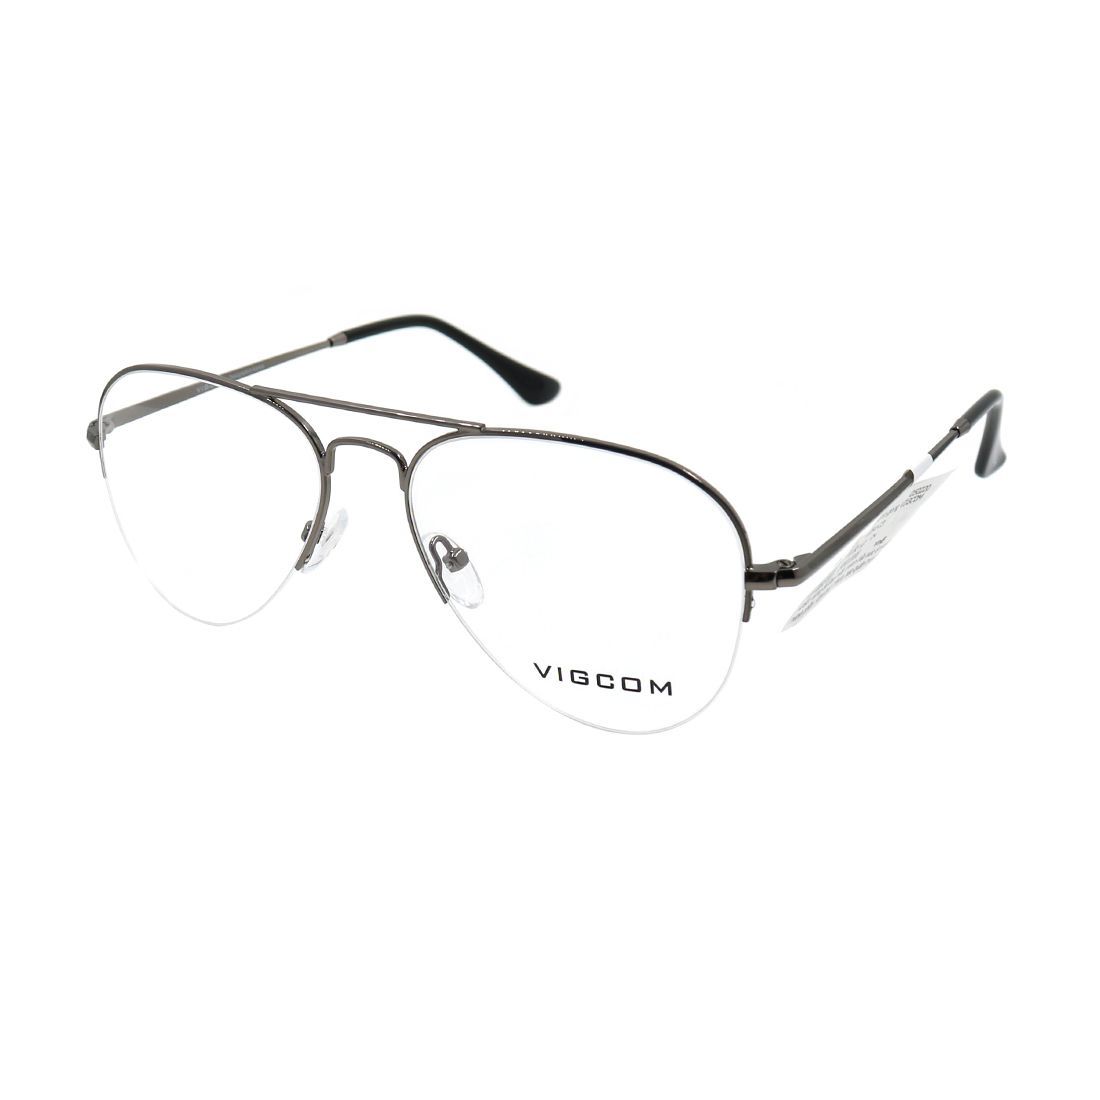  Gọng kính Vigcom VG2054 C3 